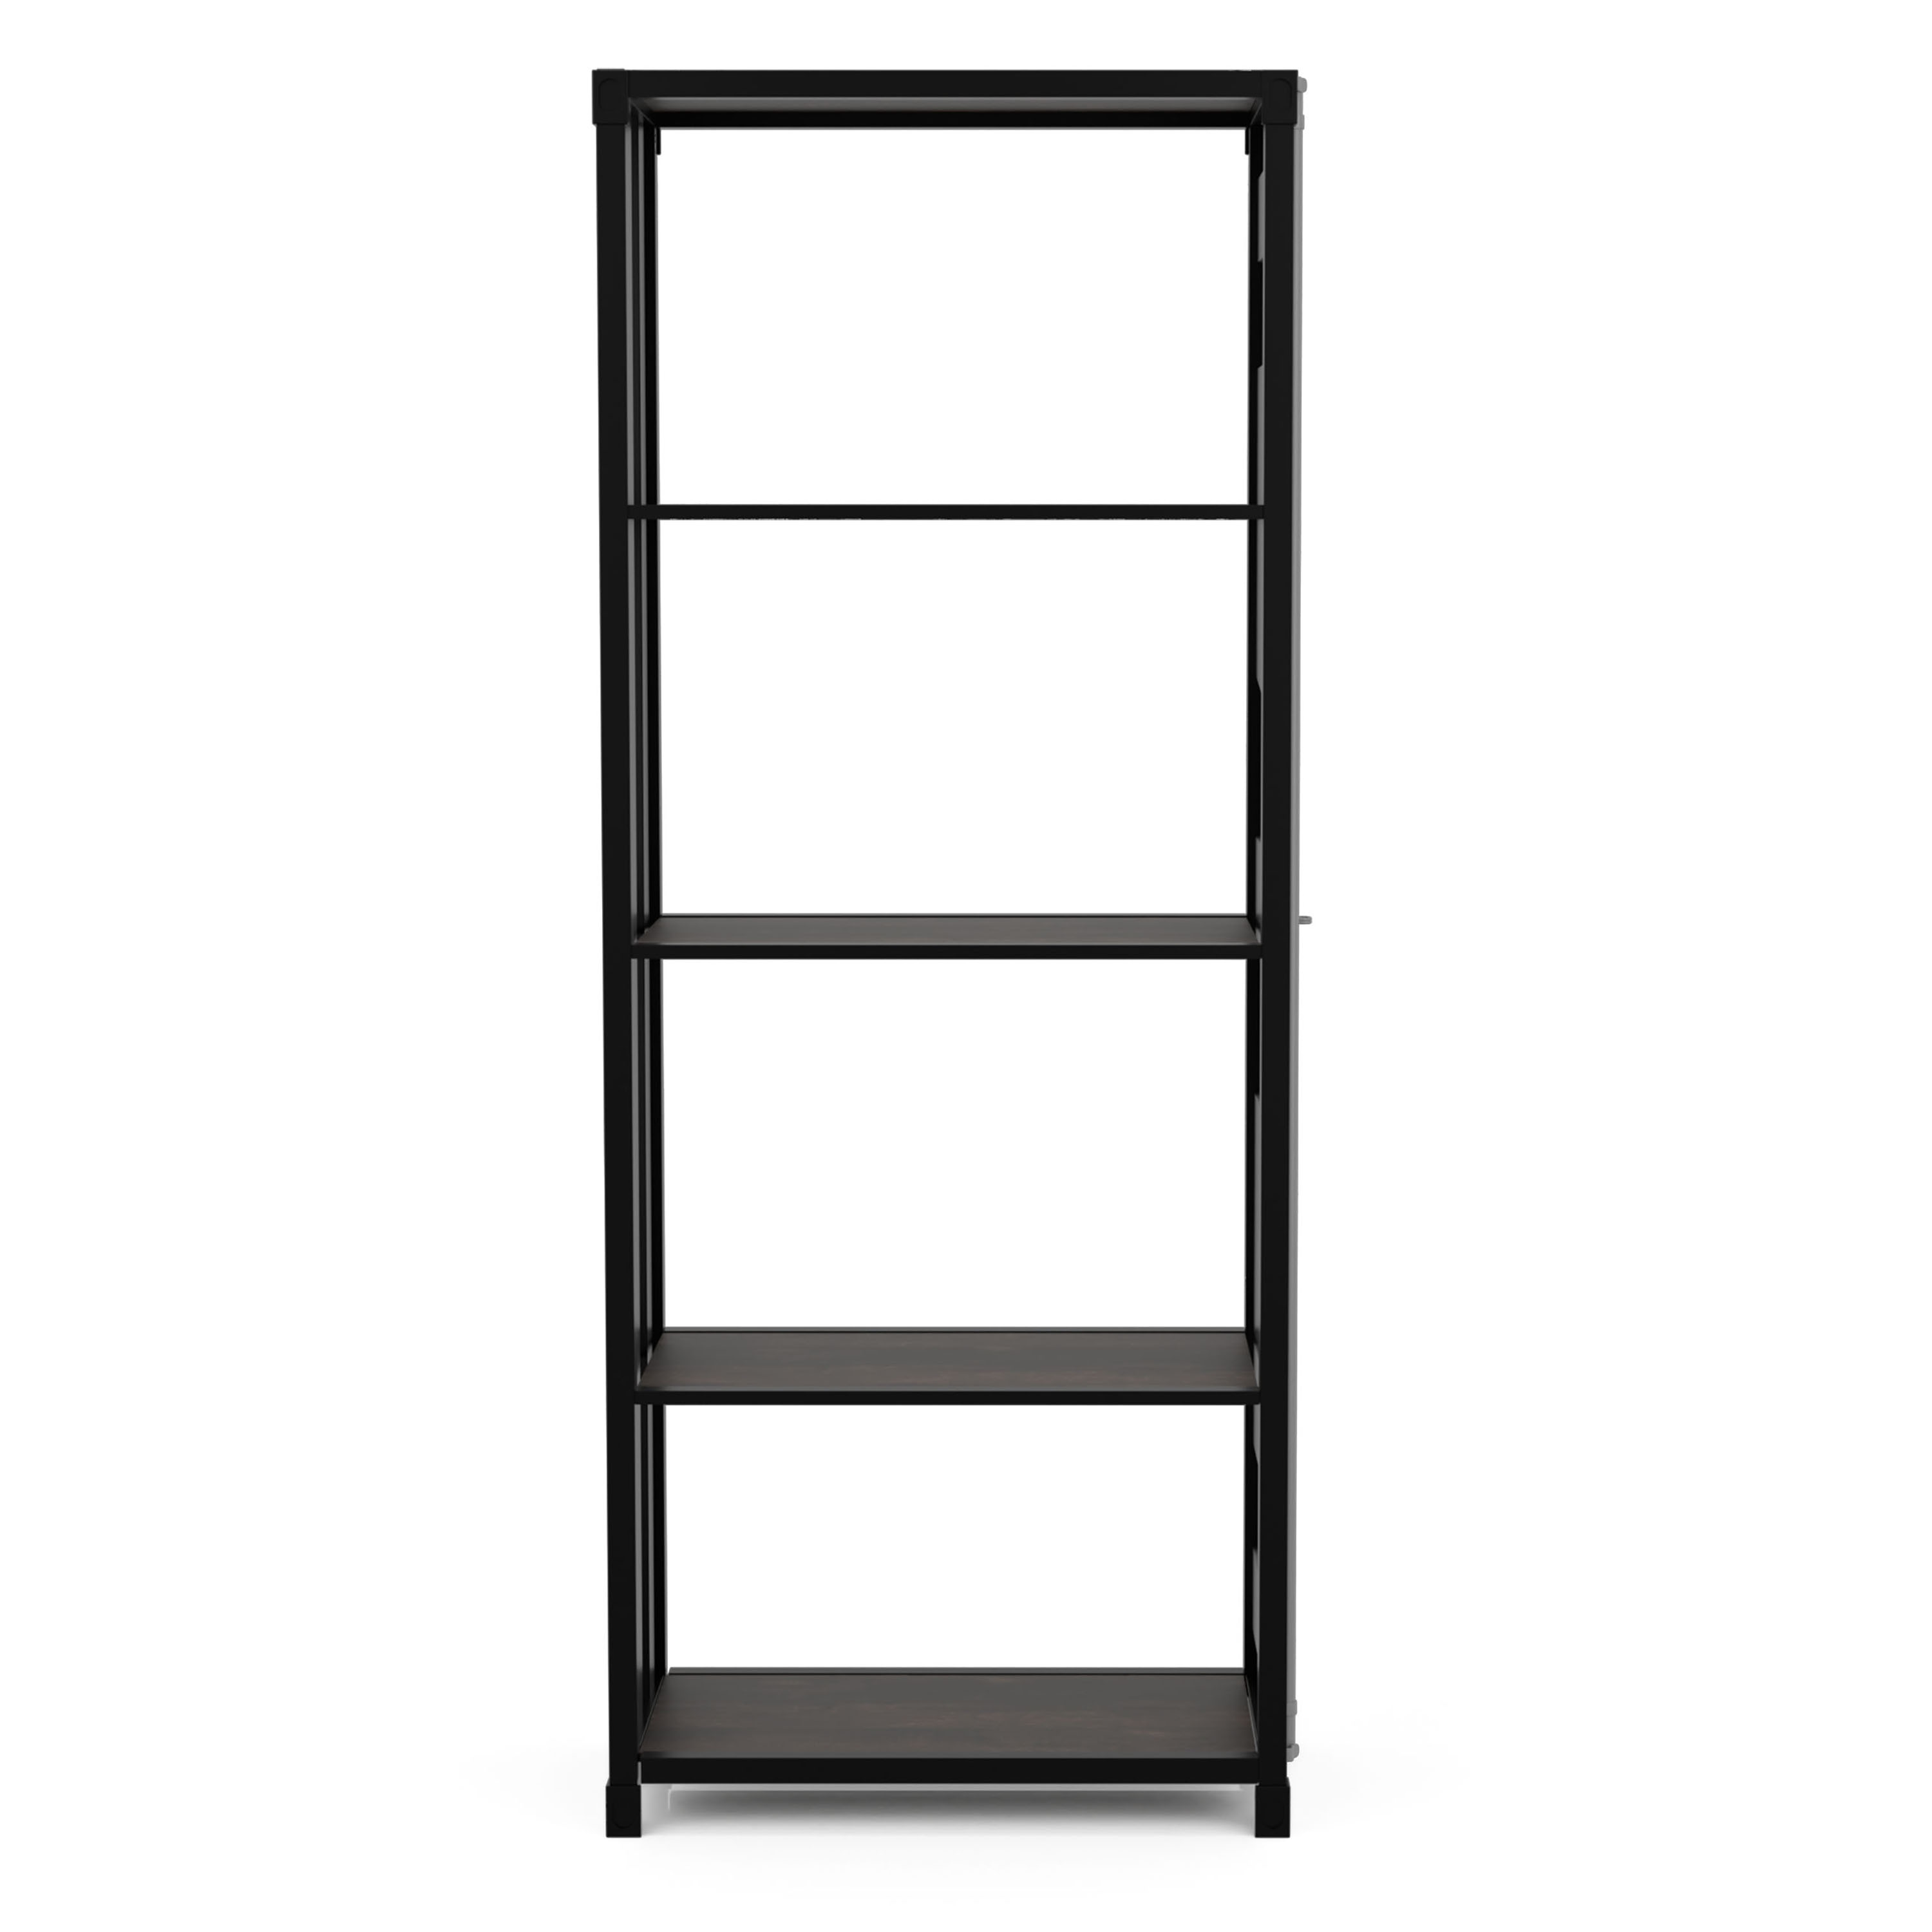 Ansinne Sand Black Metal 4-Shelf Bookcase (26.38-in W x 64.38-in H x 14-in D) | - Furniture of America IDF-AC333BK